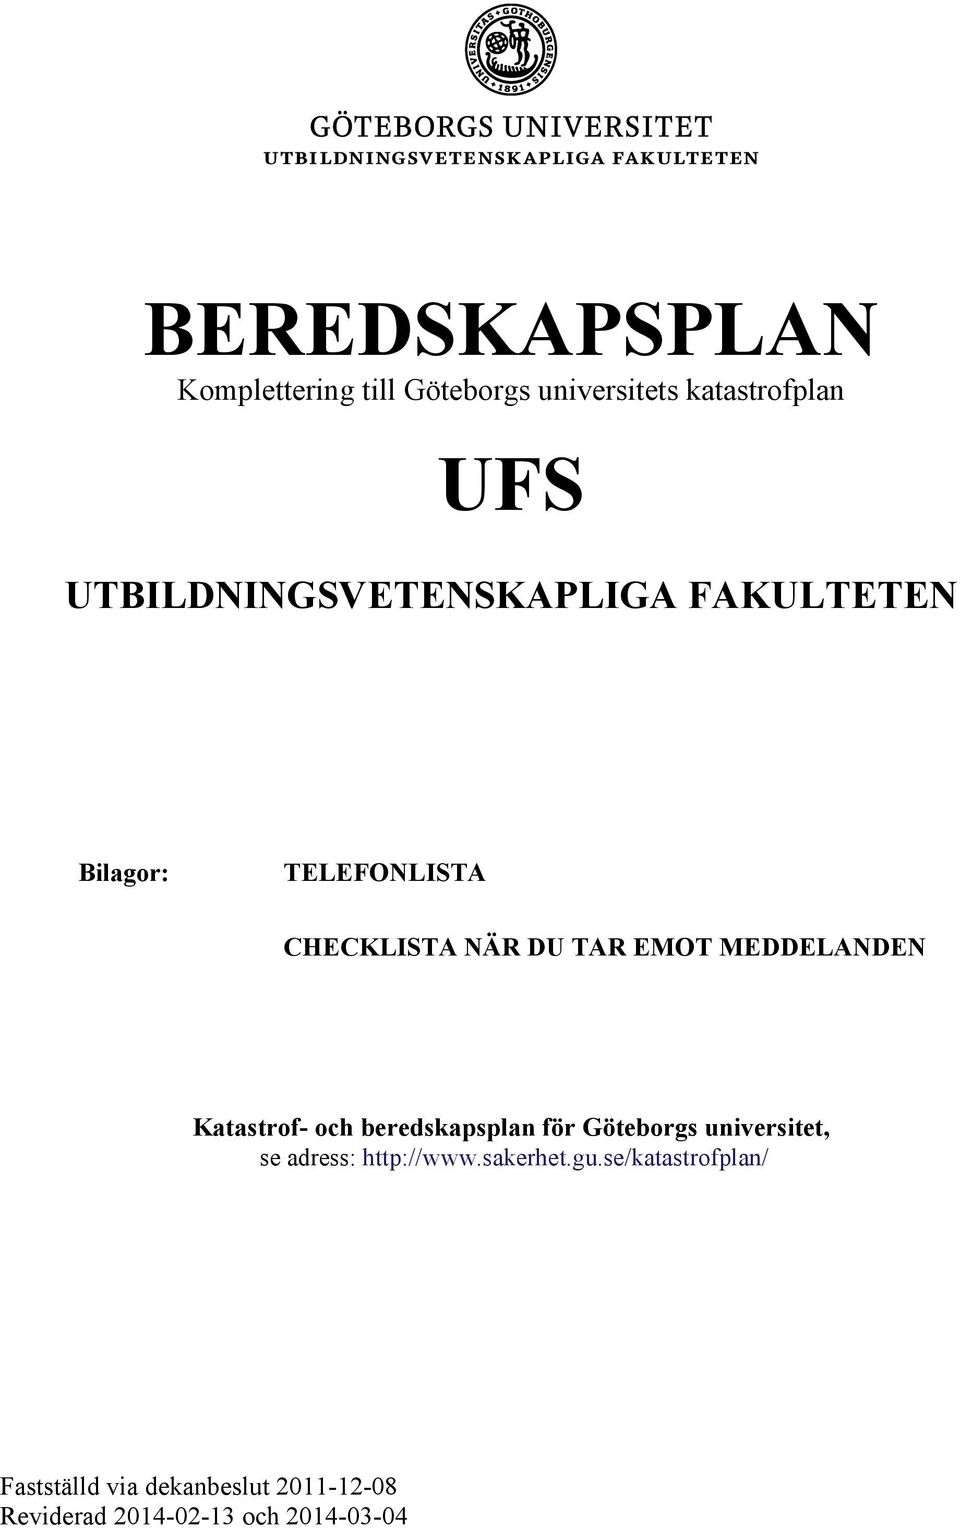 MEDDELANDEN Katastrof- och beredskapsplan för Göteborgs universitet, se adress: